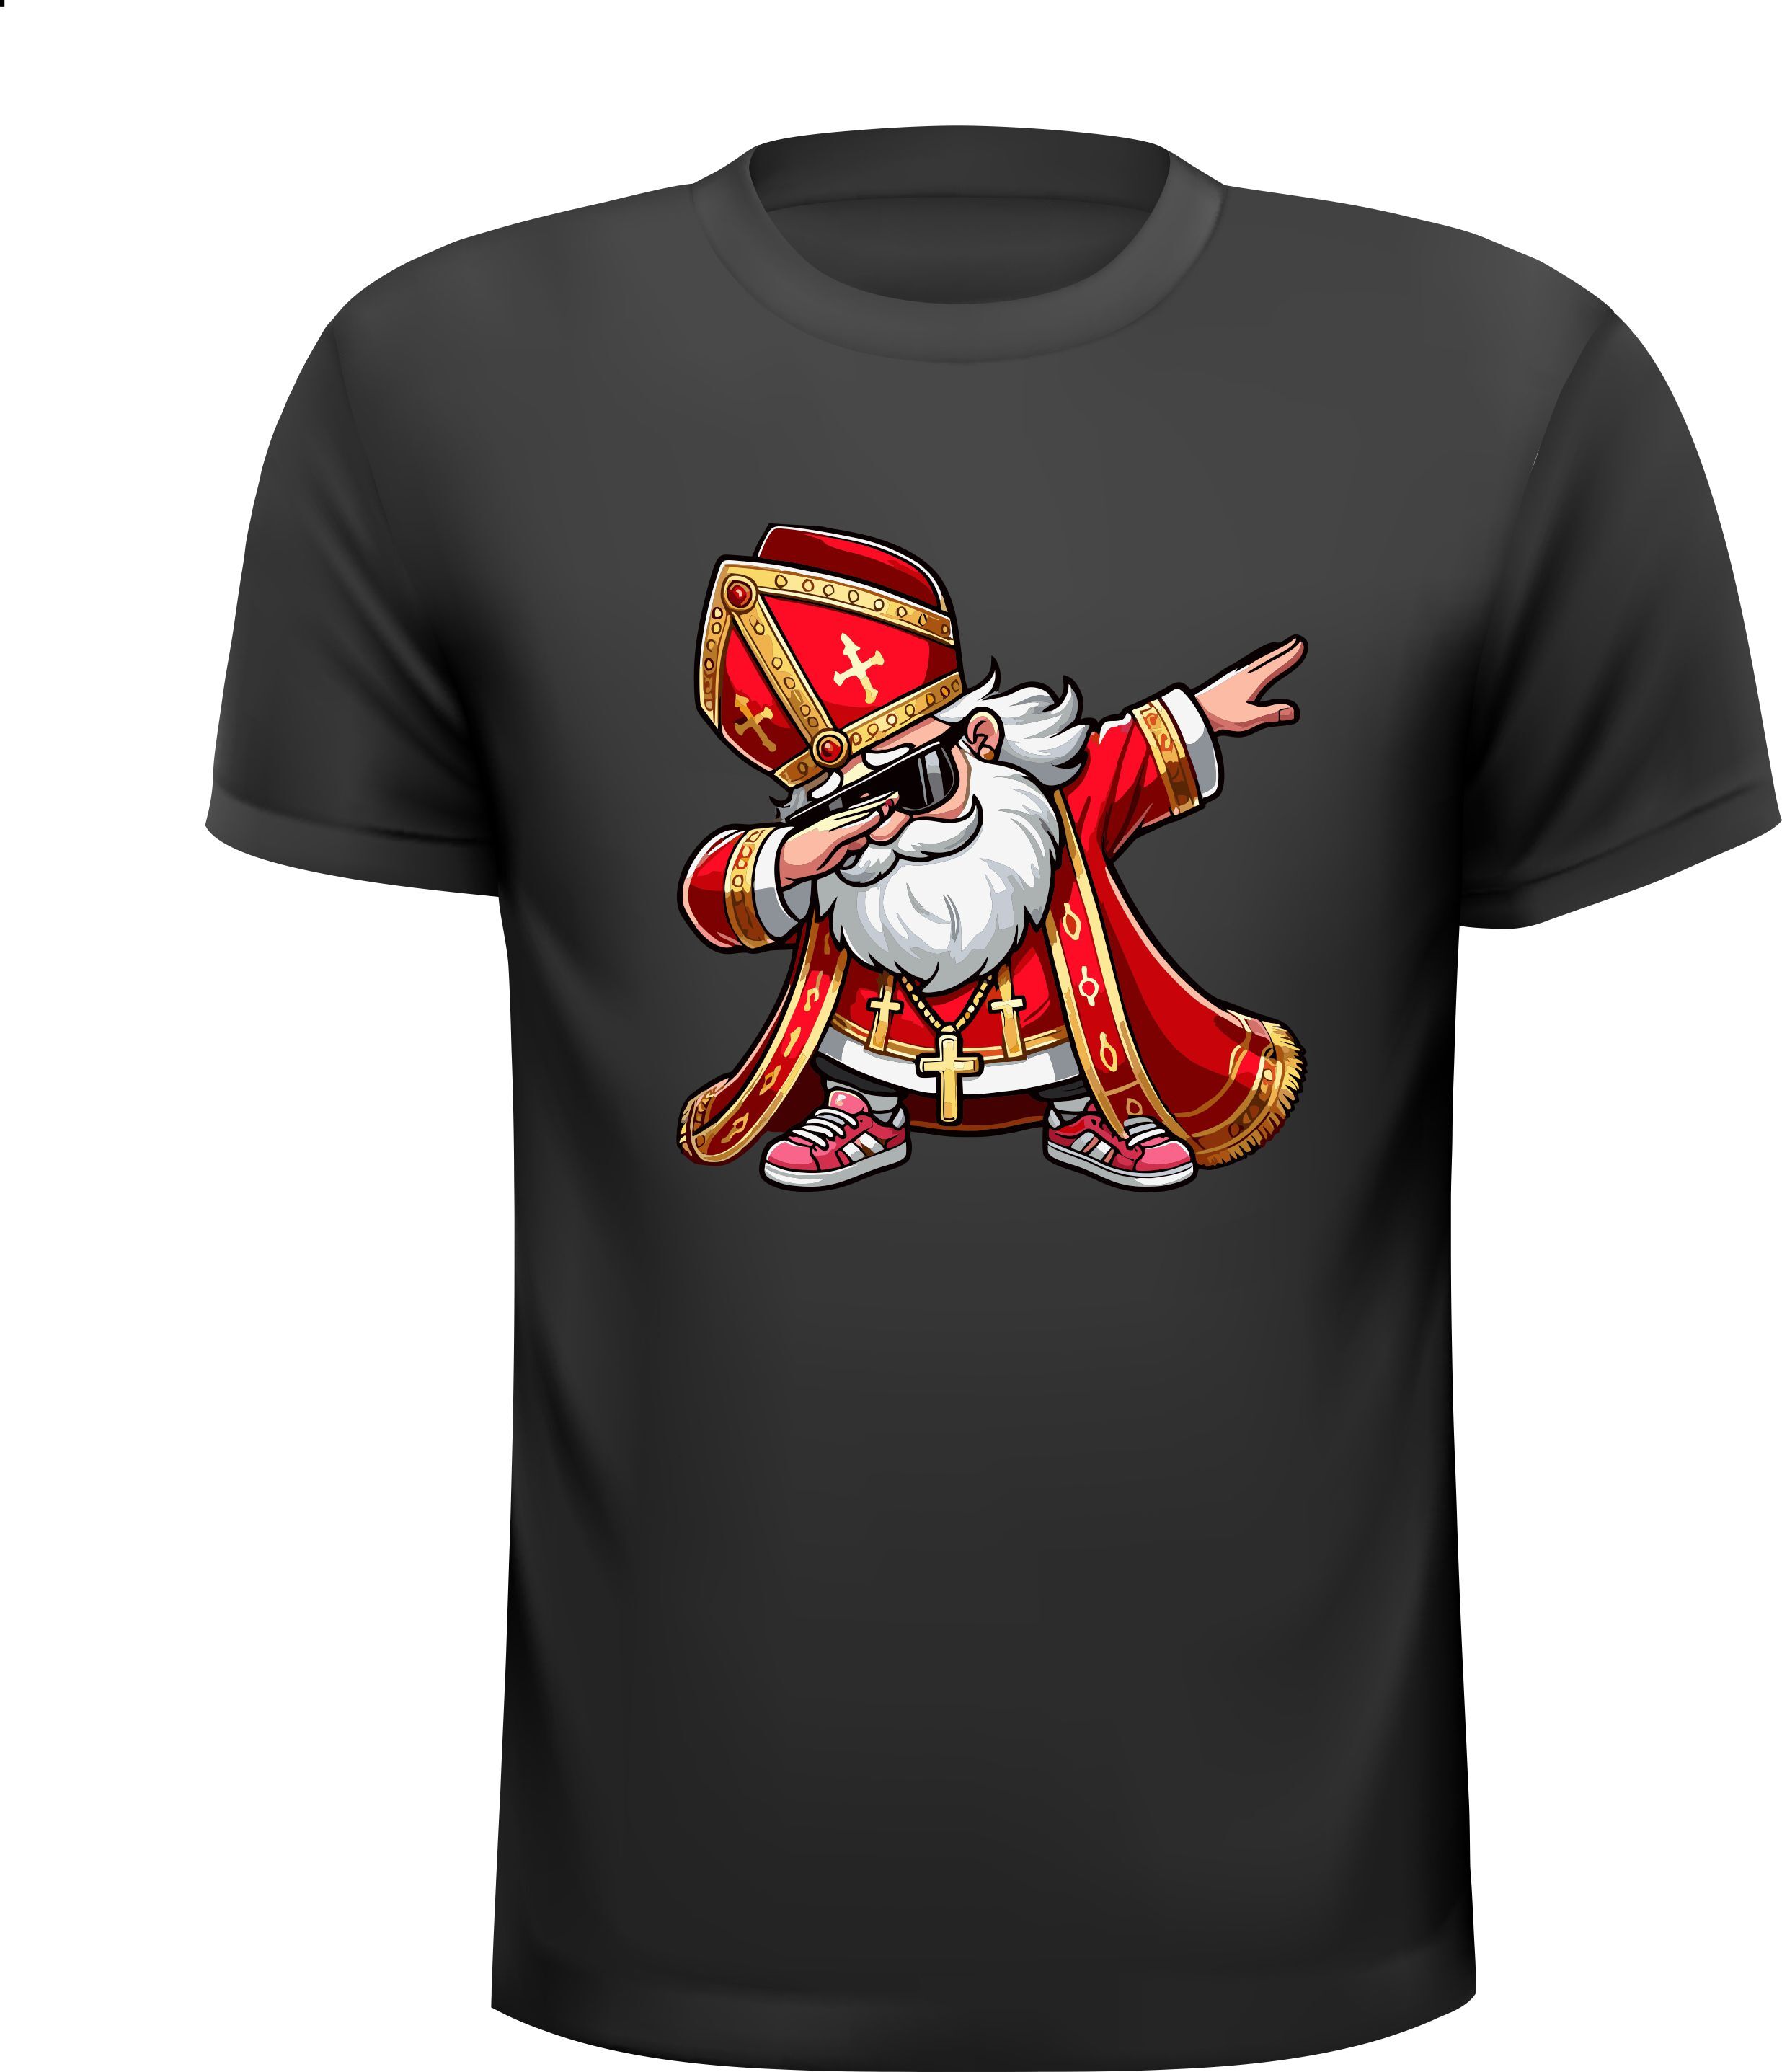 Leuke en unieke T-shirt met Sinterklaas in de dab-positie!